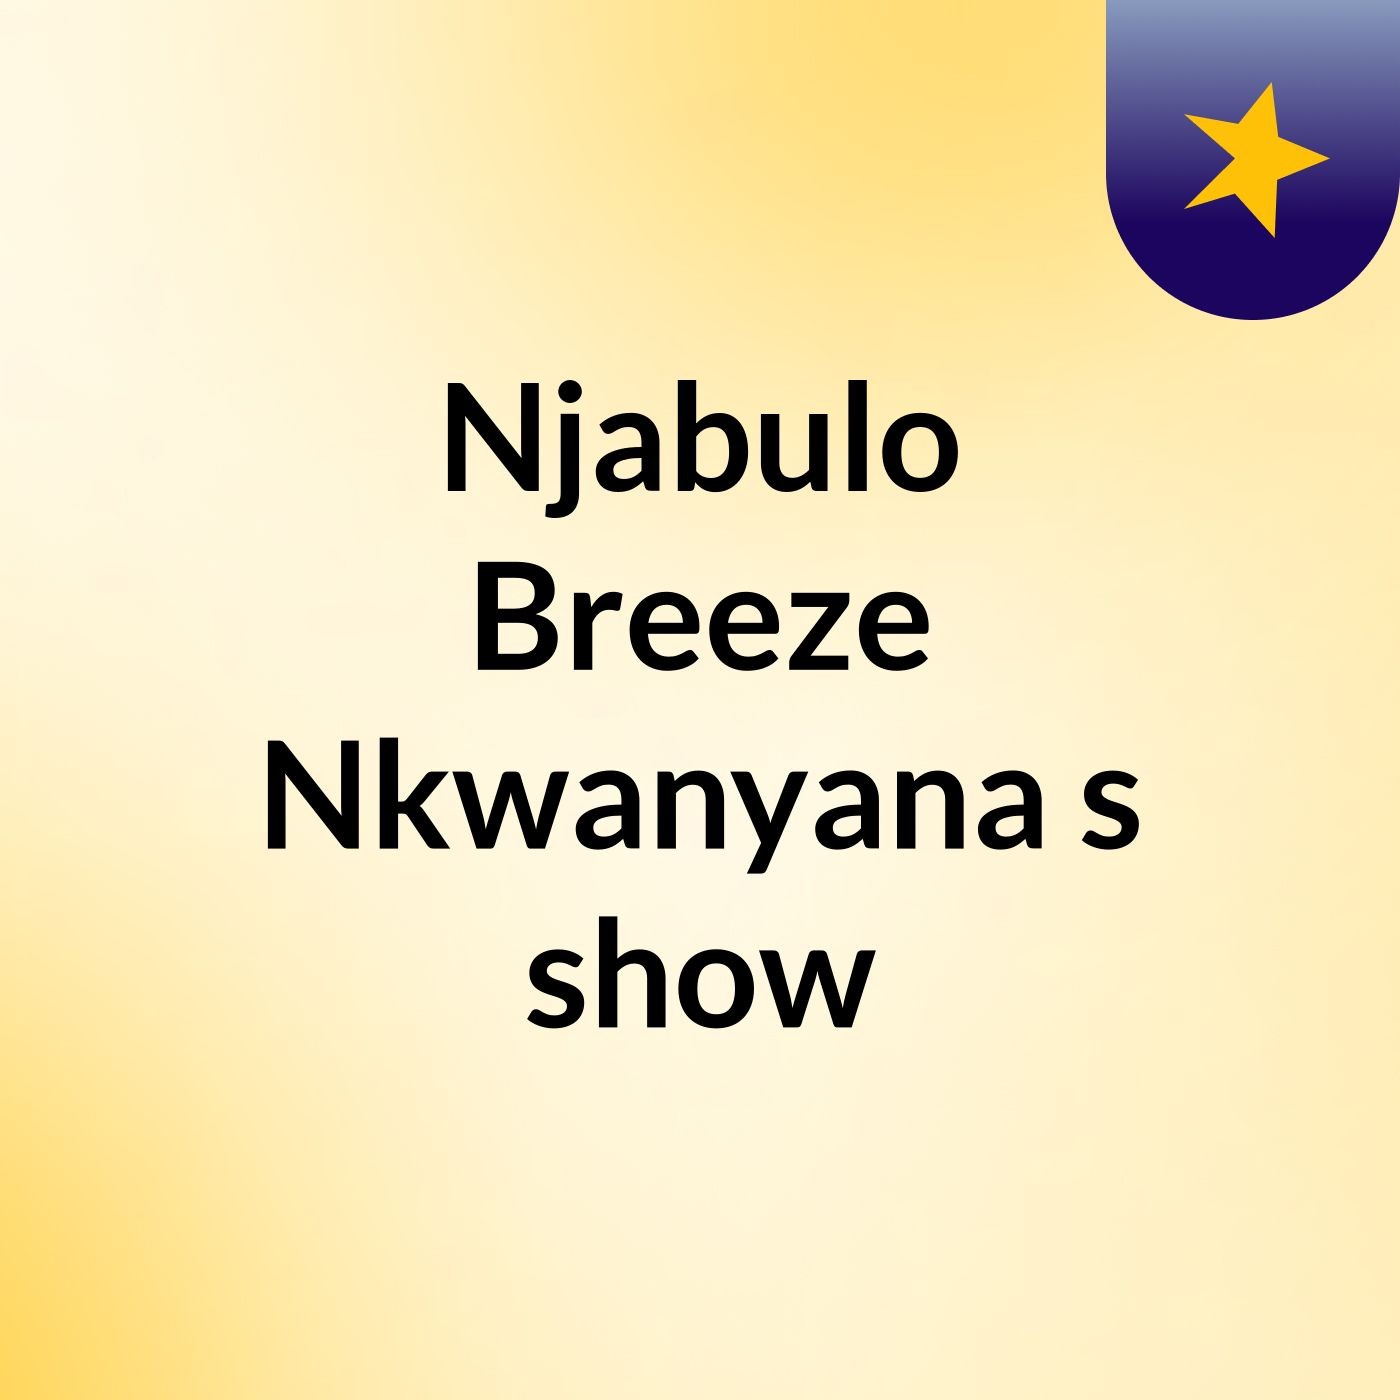 Njabulo Breeze Nkwanyana's show